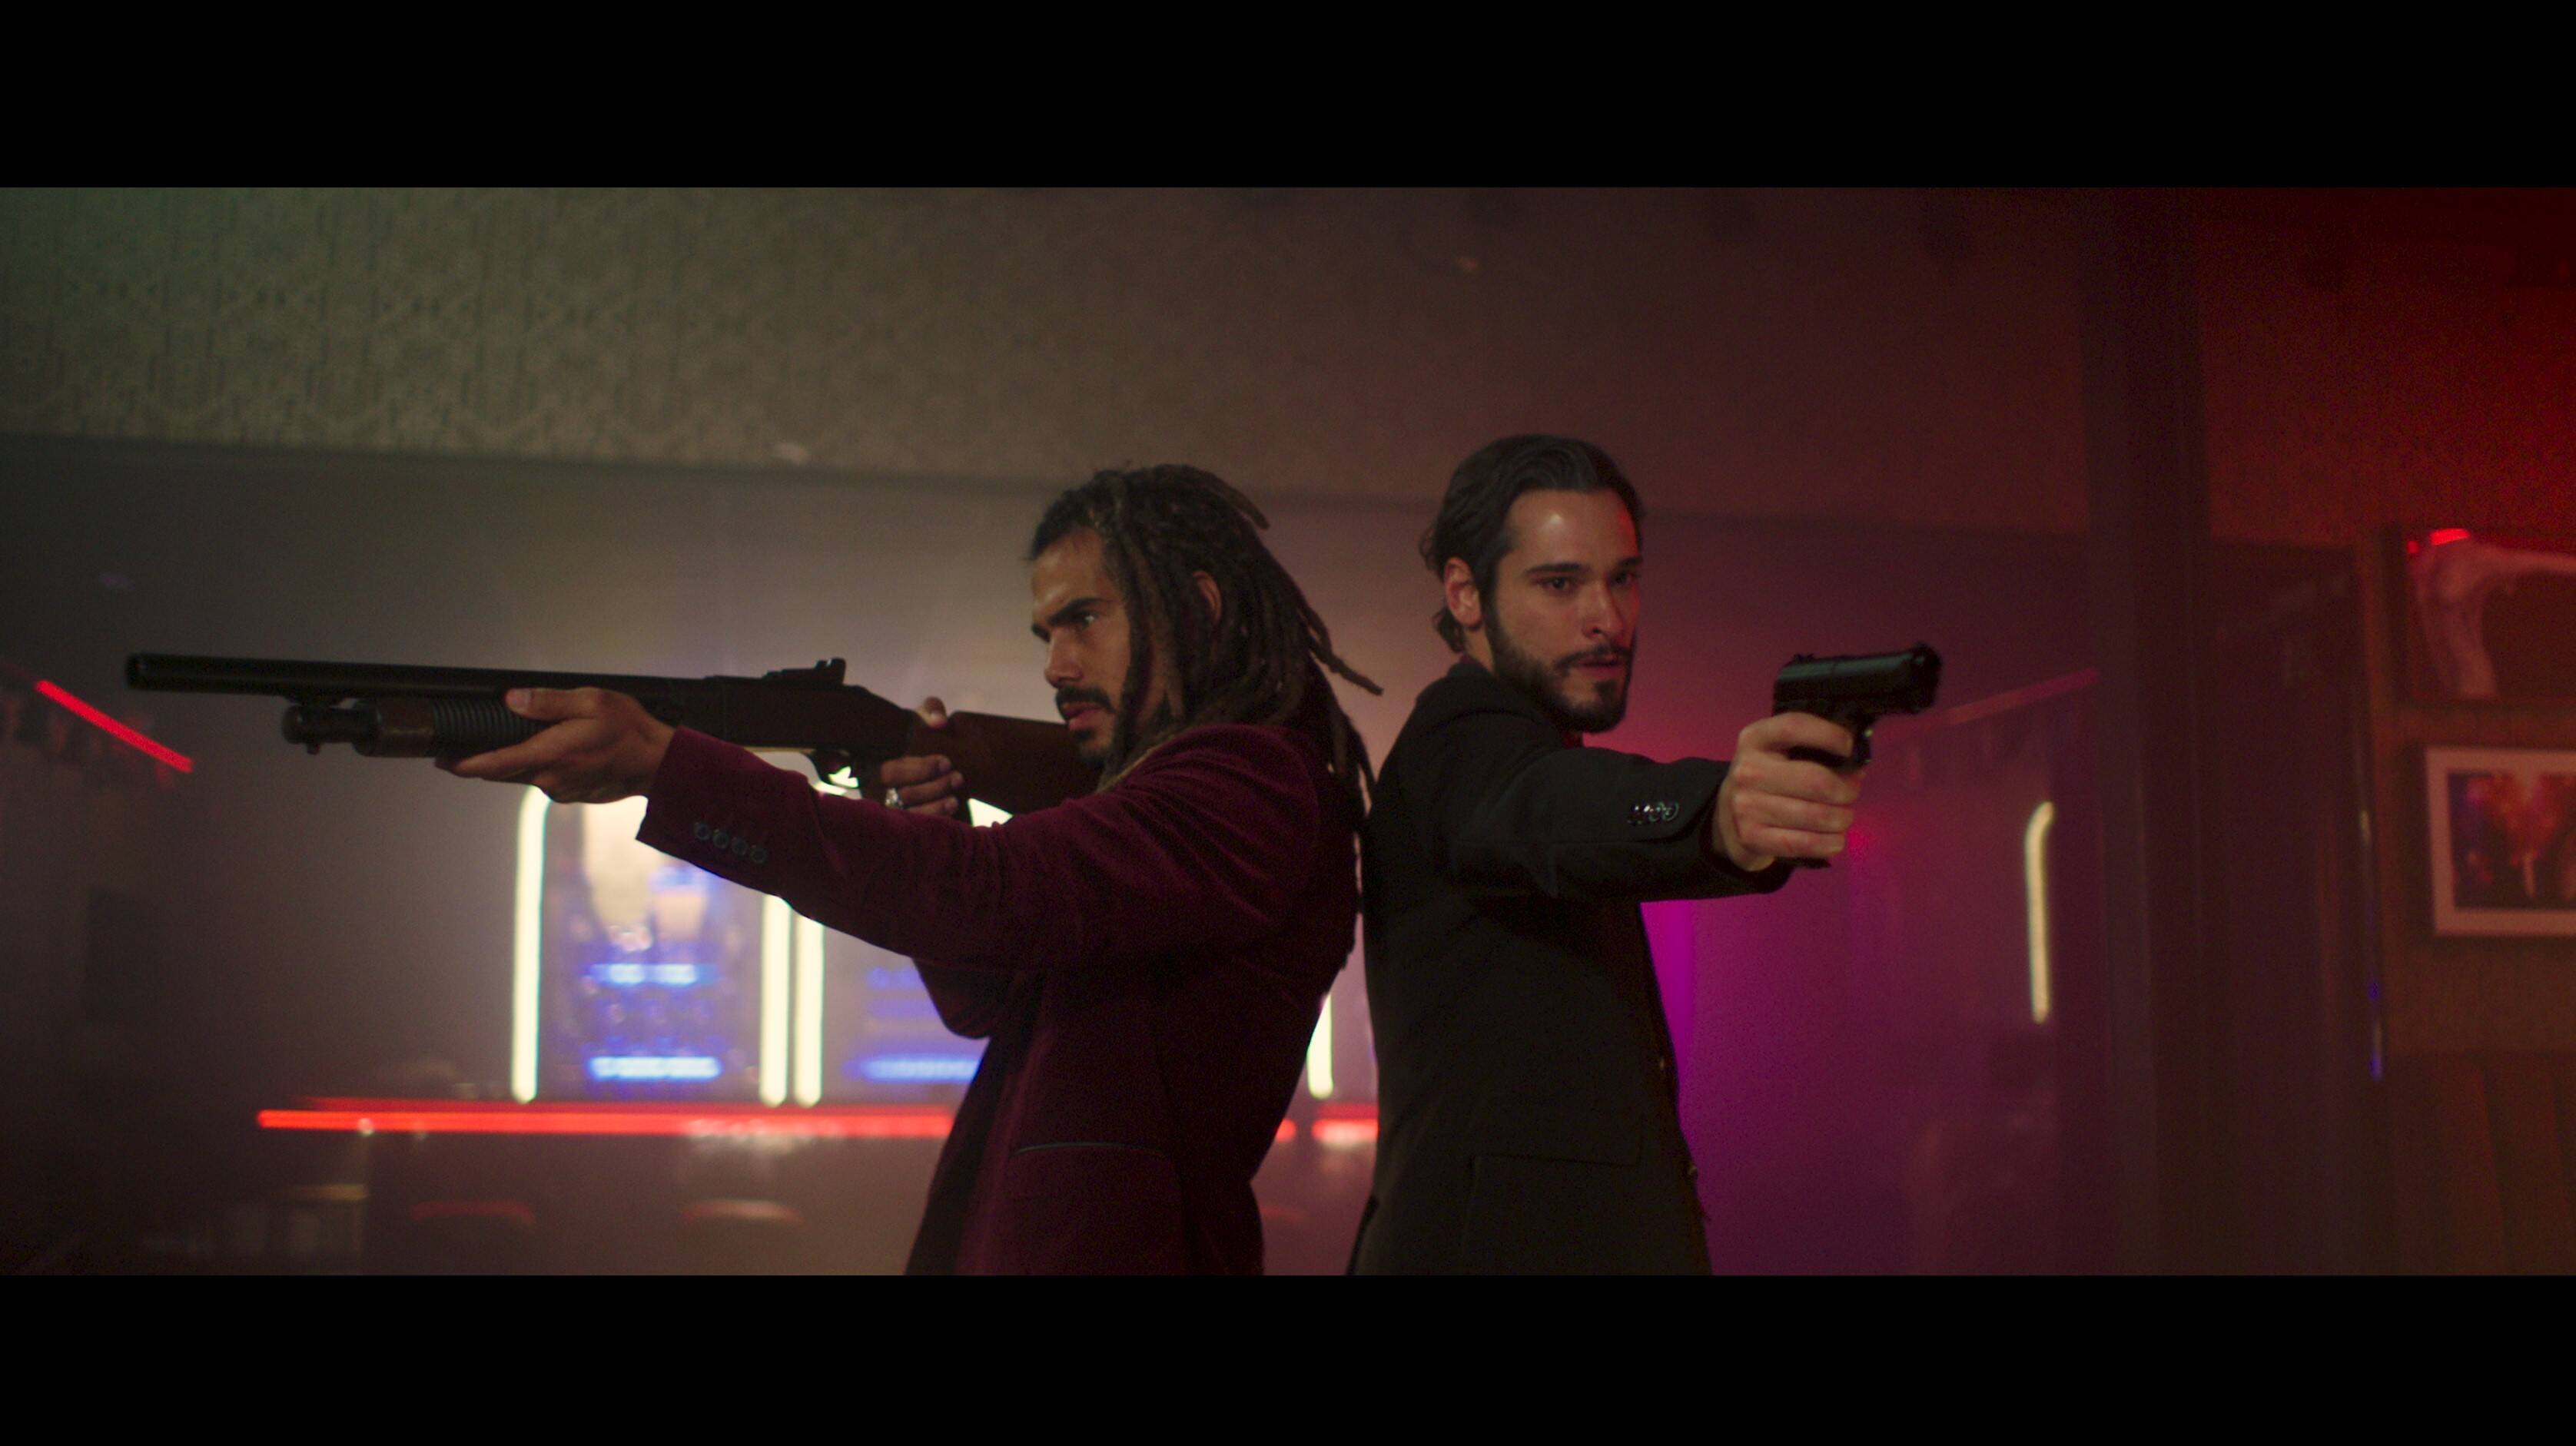 Micael e Bruno Fagundes em ação no filme "Moscow". Foto: Moscow Filme/Divulgação